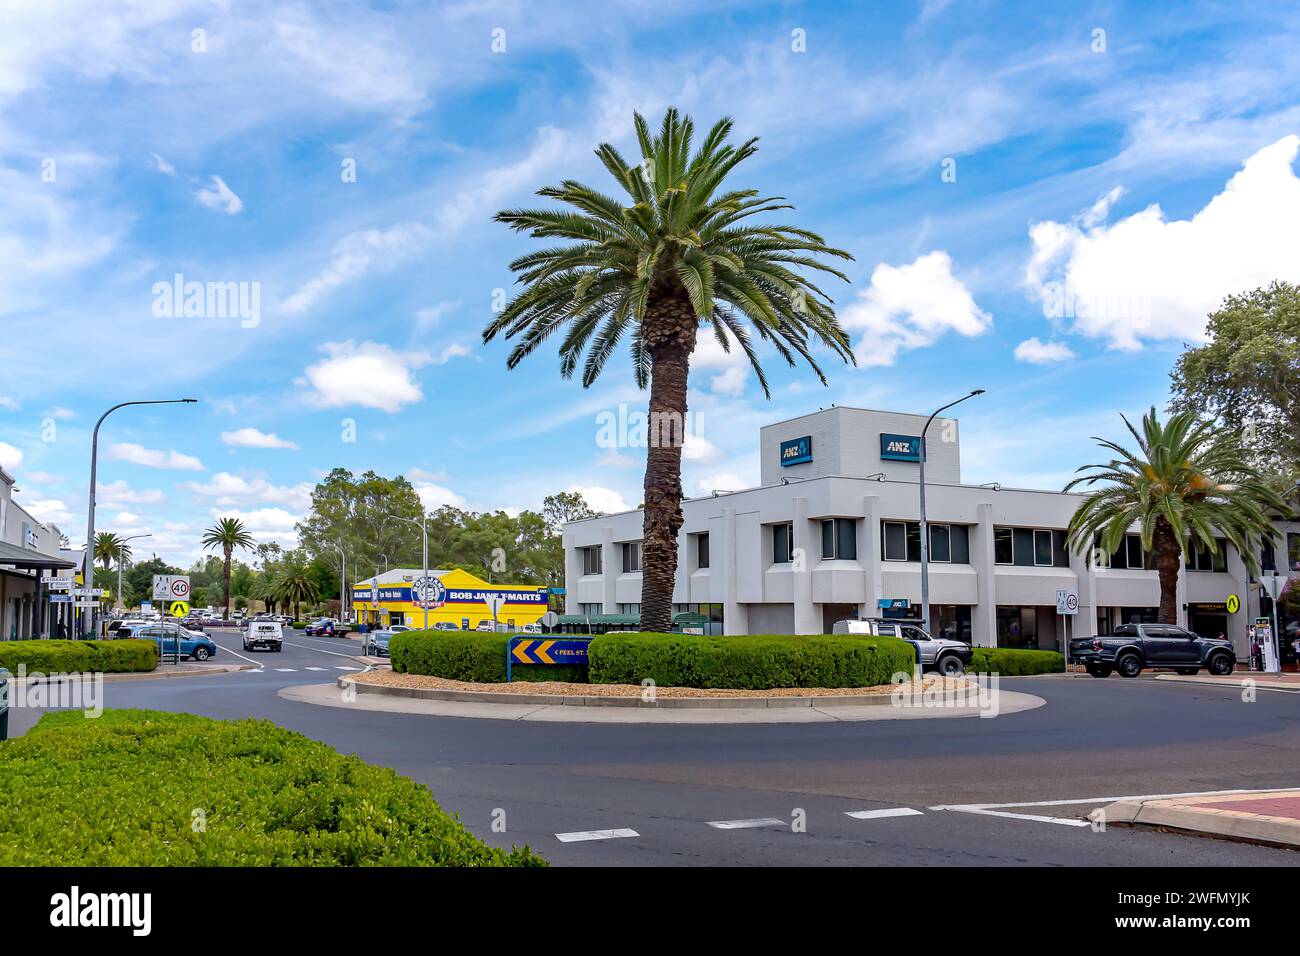 Palm Tree au centre du rond-point à la jonction de Peel Streets et White Streets Tamworth Australia. Banque D'Images